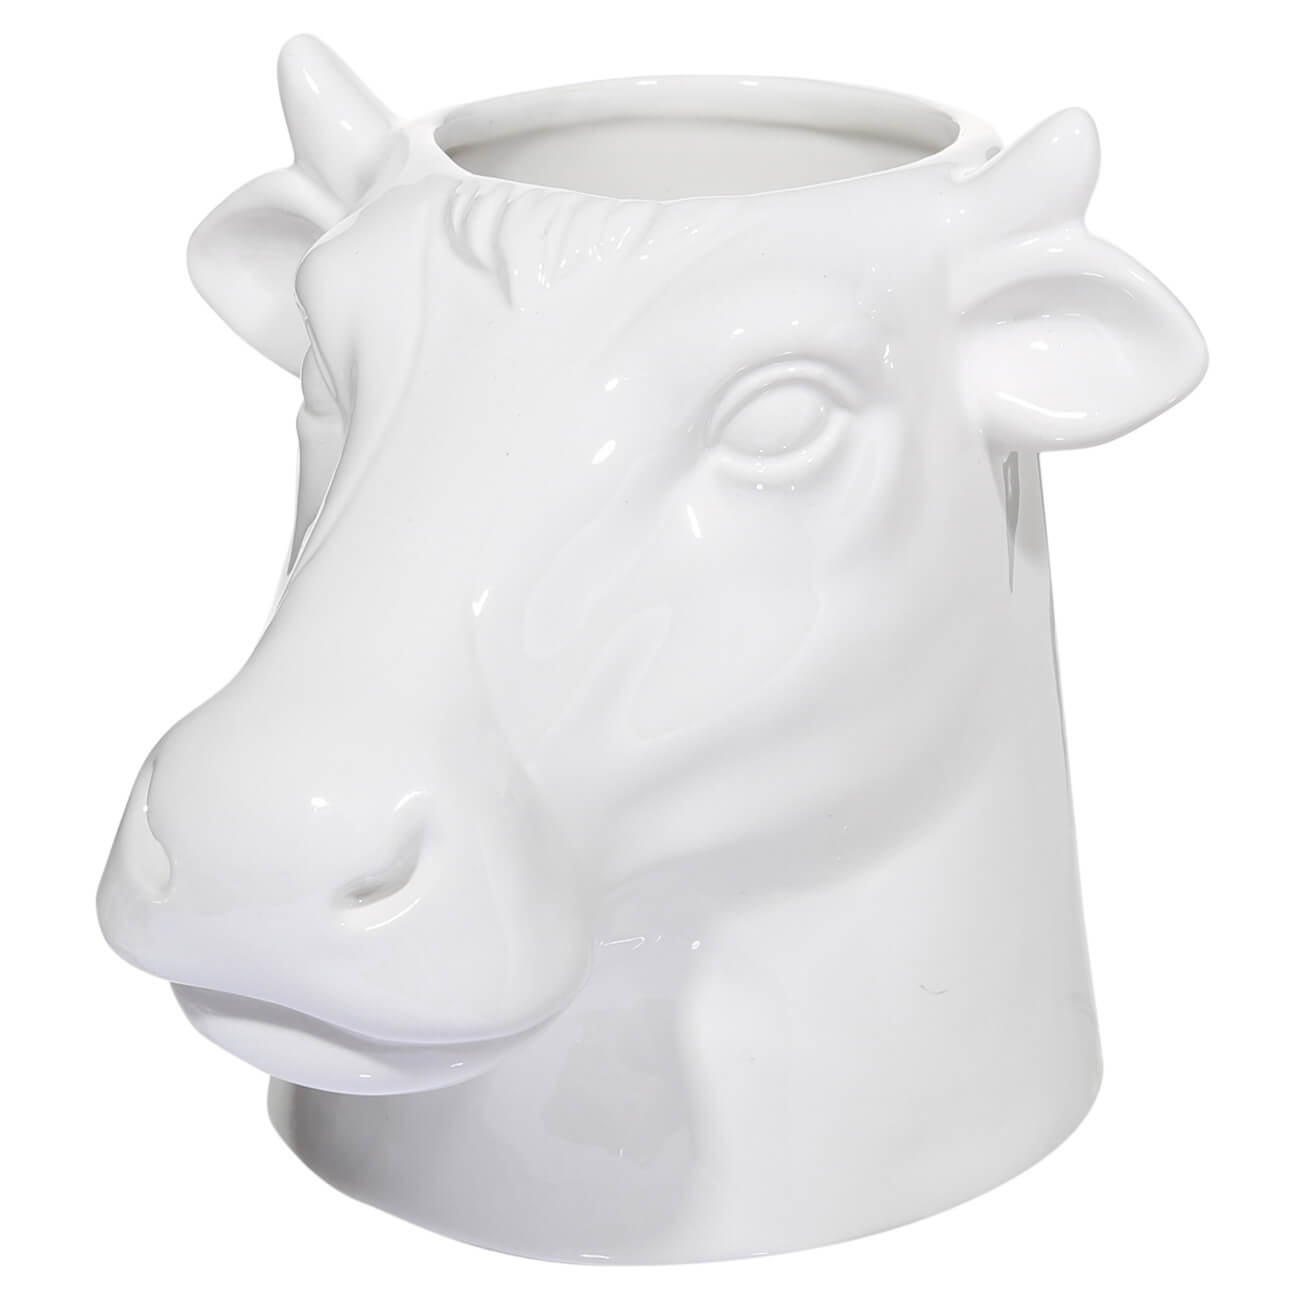 Подставка для кухонных принадлежностей, 15 см, керамика, белая, Корова, Polar bull сувенир садовый травянчик корова